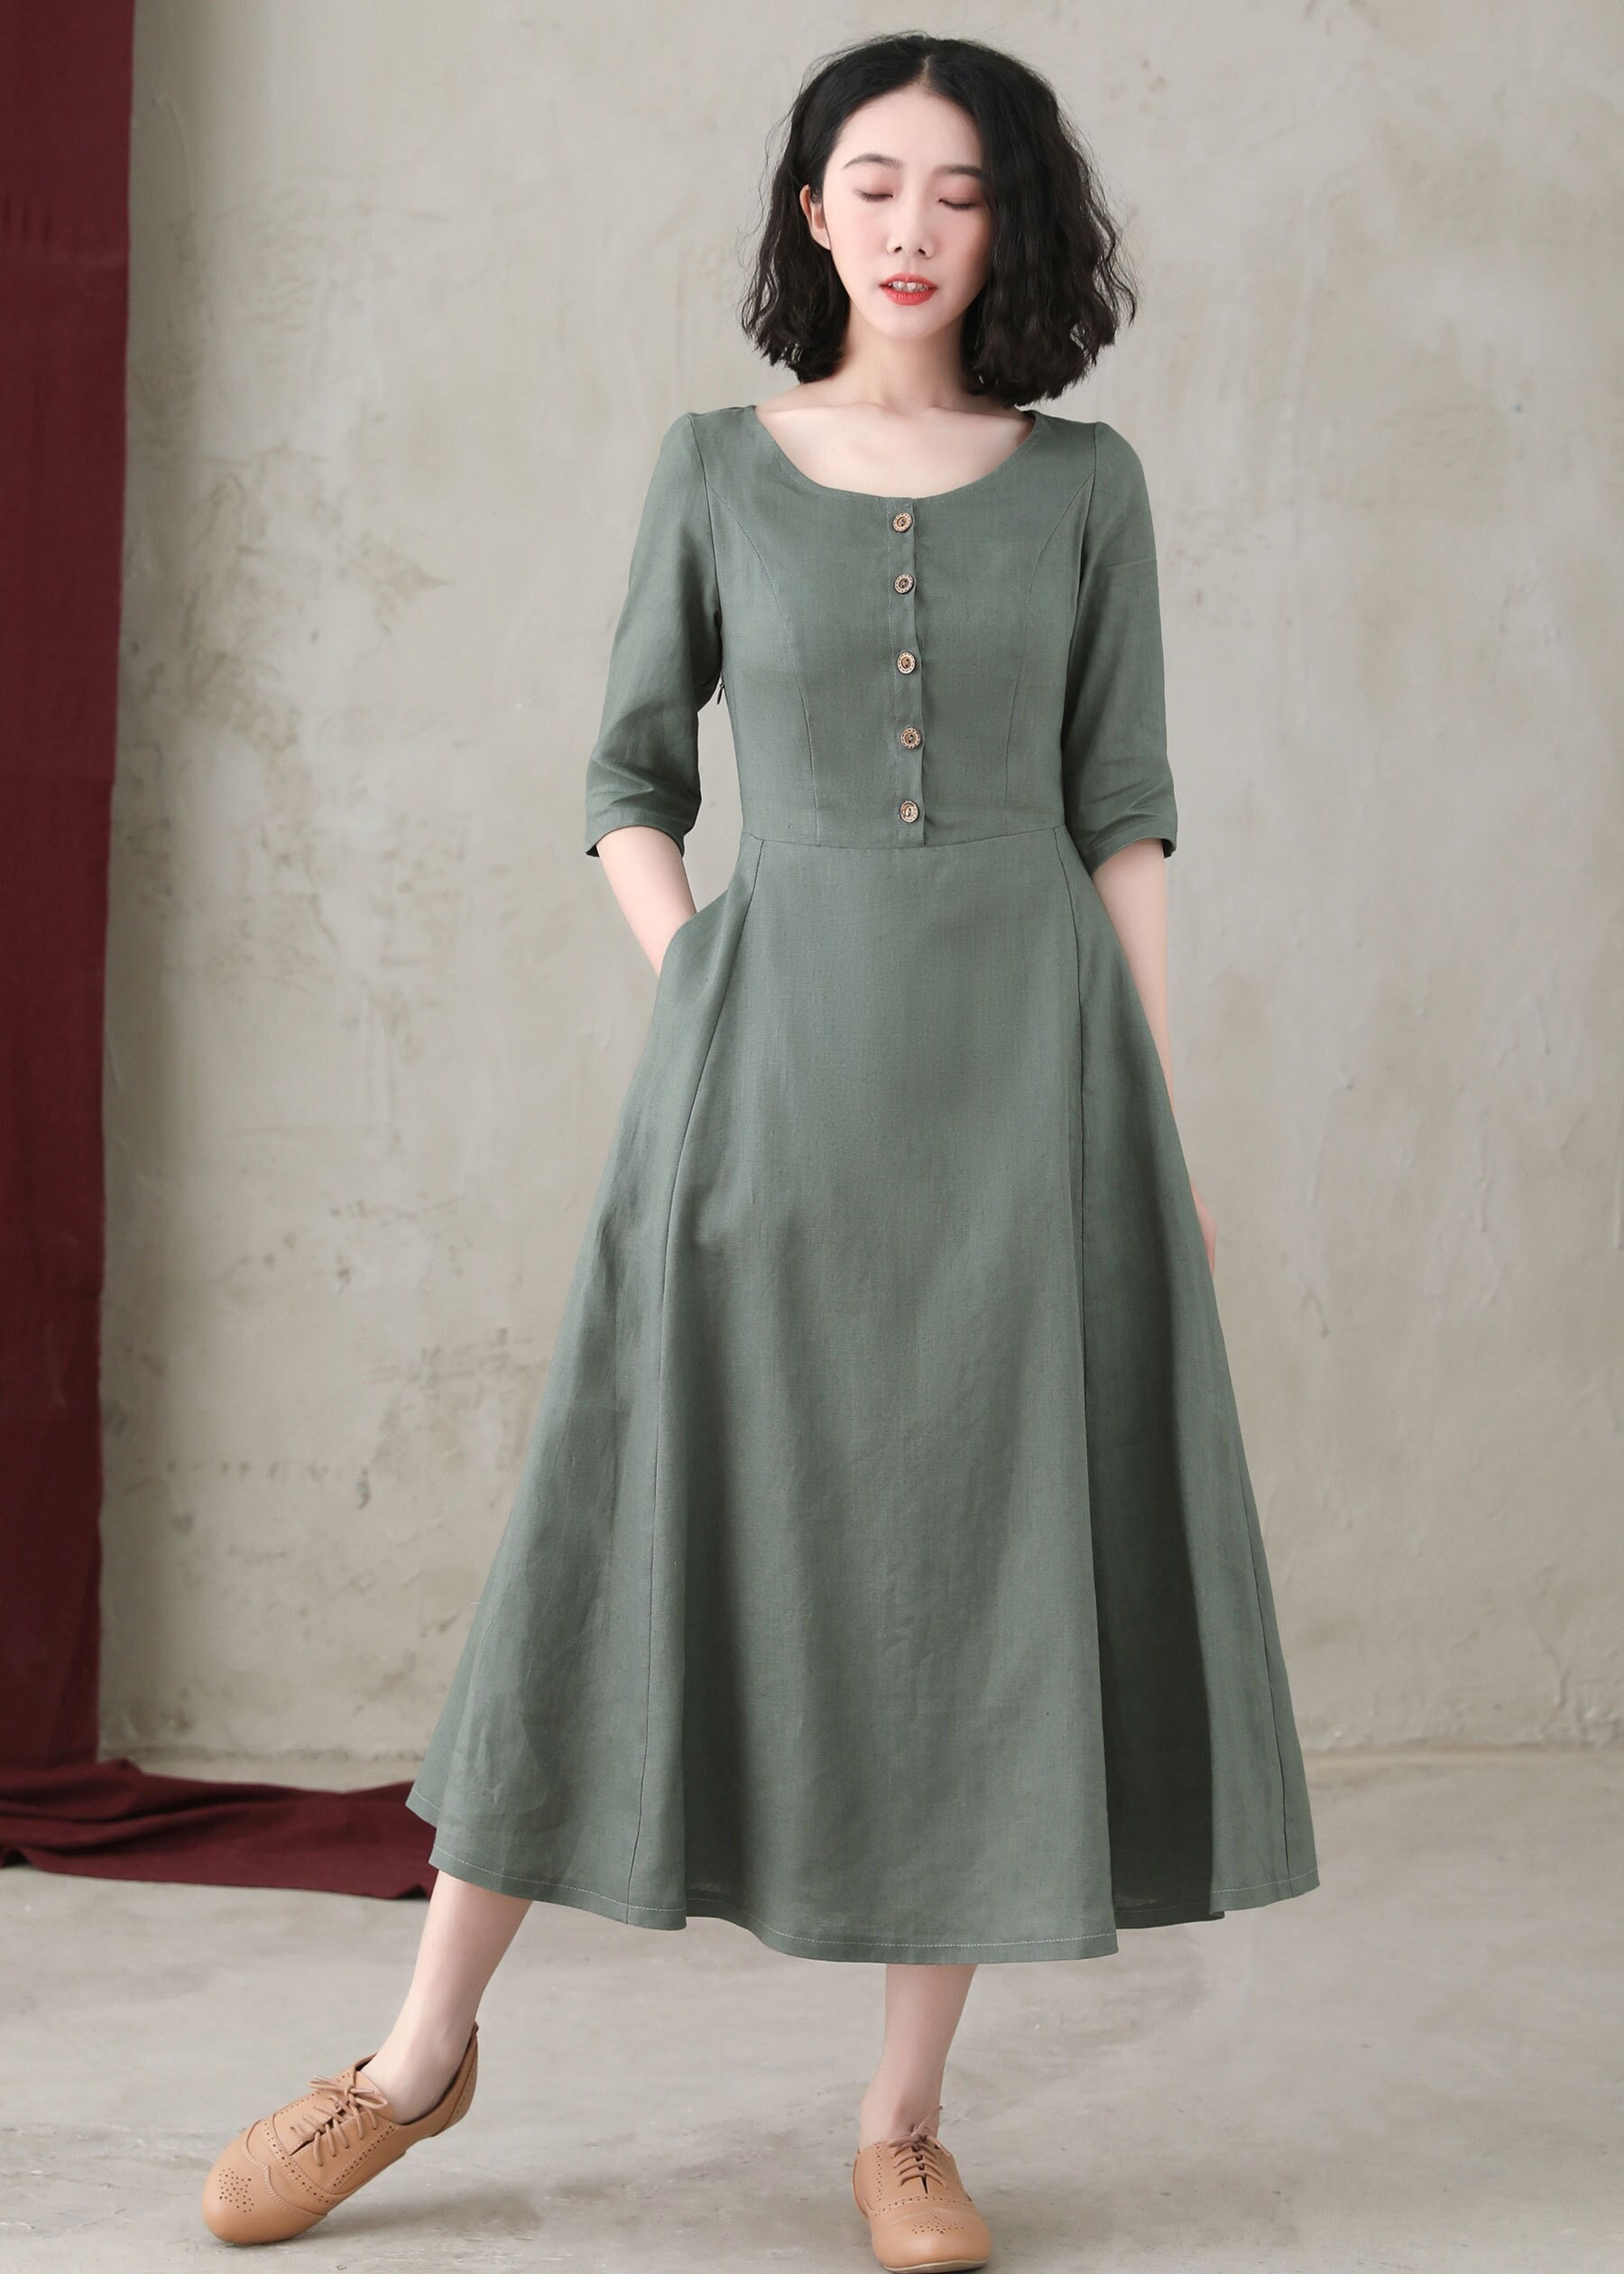 Linen Dress, Linen Midi Dress, Summer Long Linen Dress With Pockets, Dark  Green Organic Linen Dress Women, A-line Dress, Ylistyle C2745 -  Canada